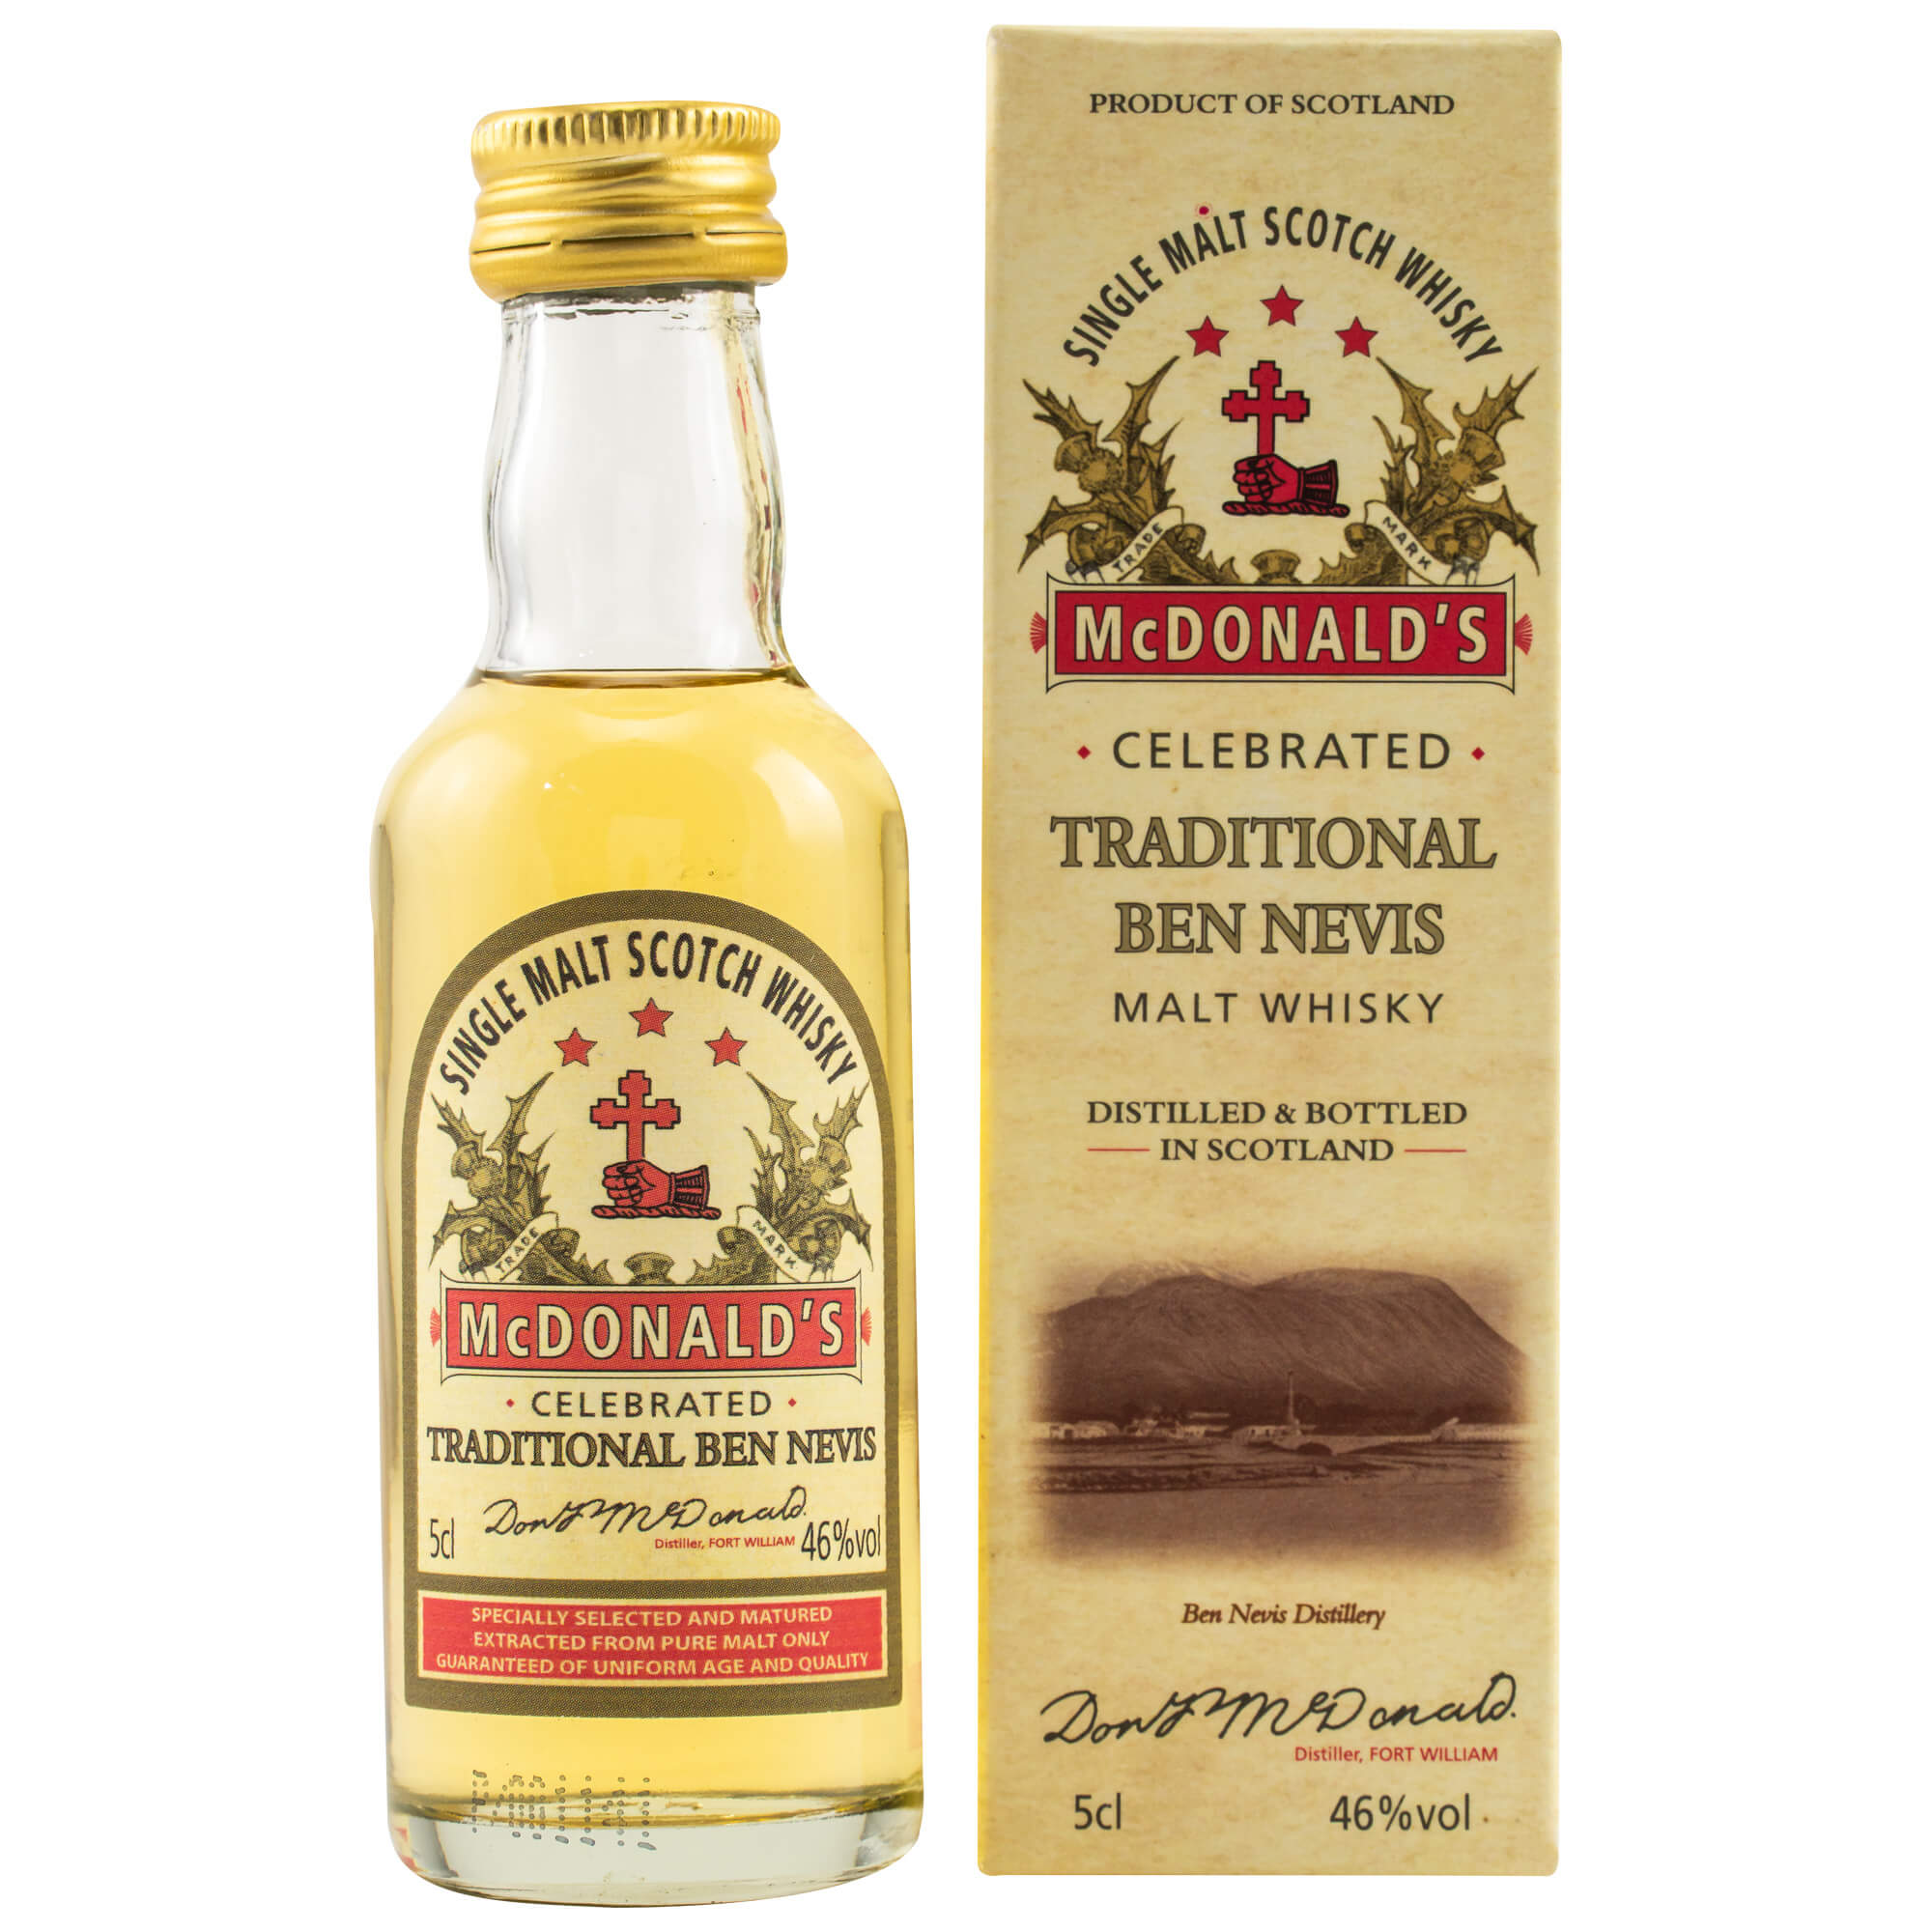 Ben Nevis Traditional Malt Whisky